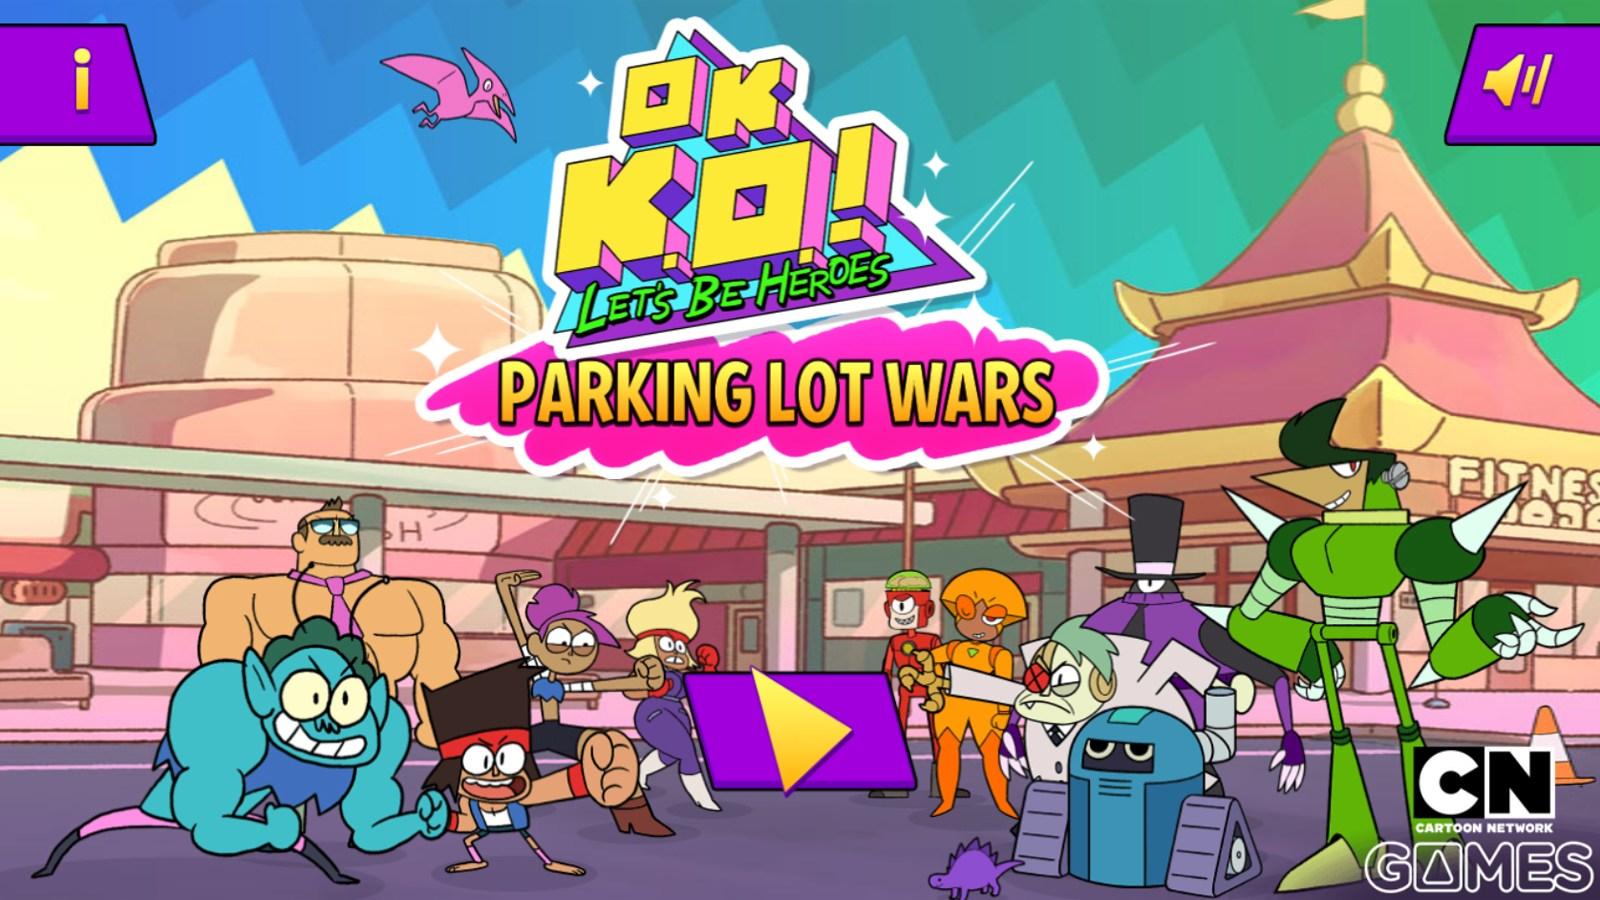 Parking Lot Wars. OK KO! Games